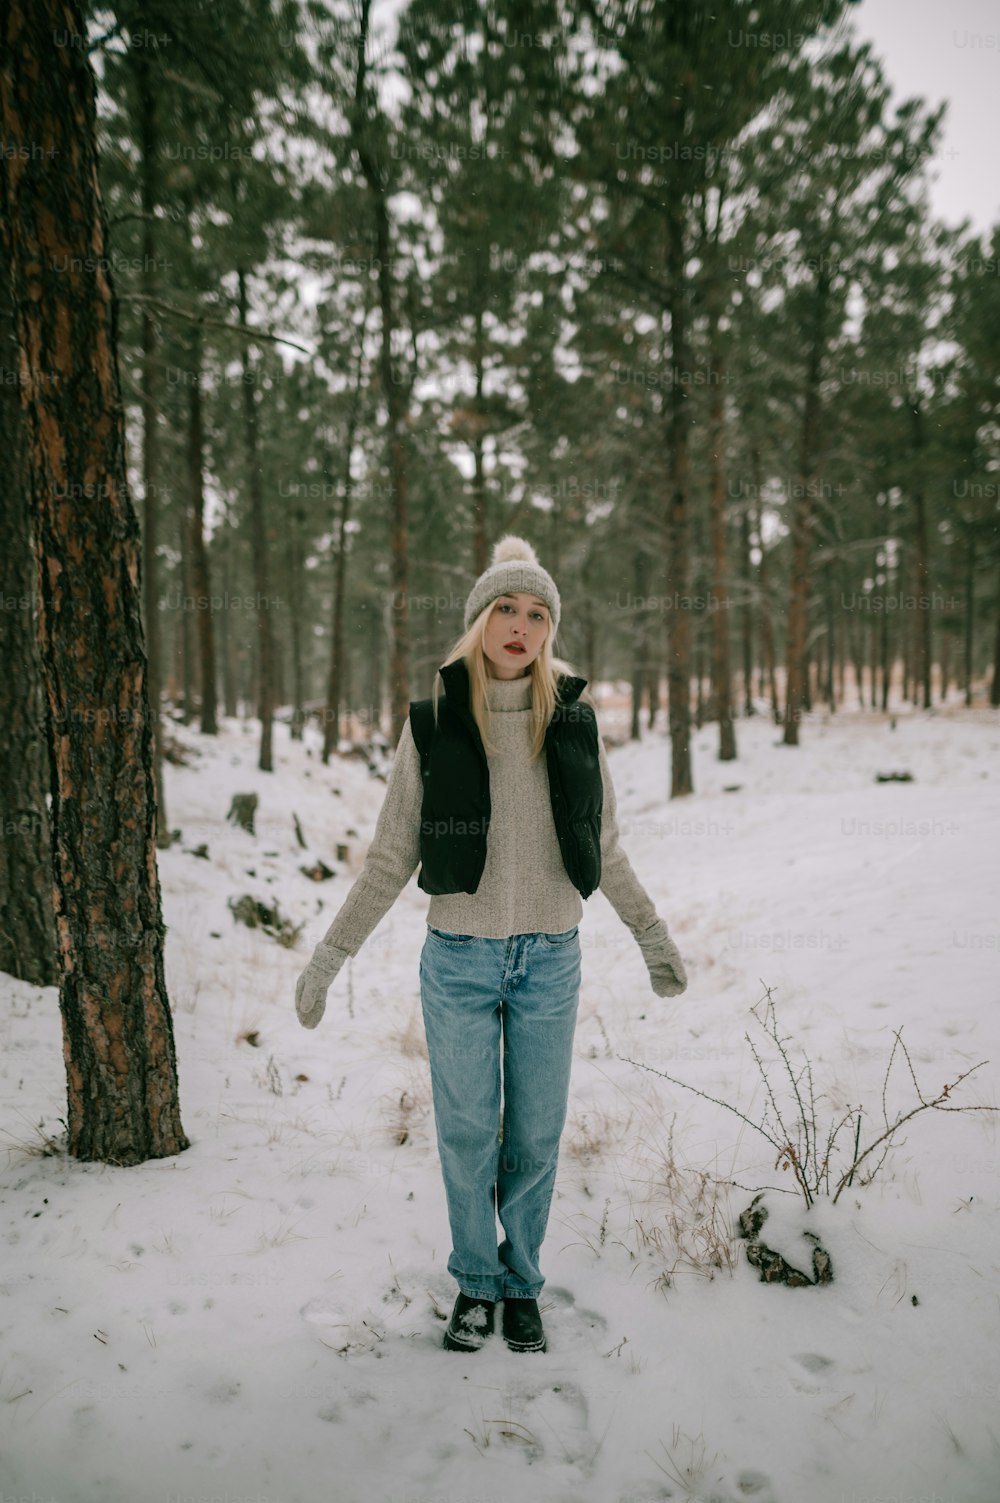 Eine Frau steht im Schnee neben einem Baum